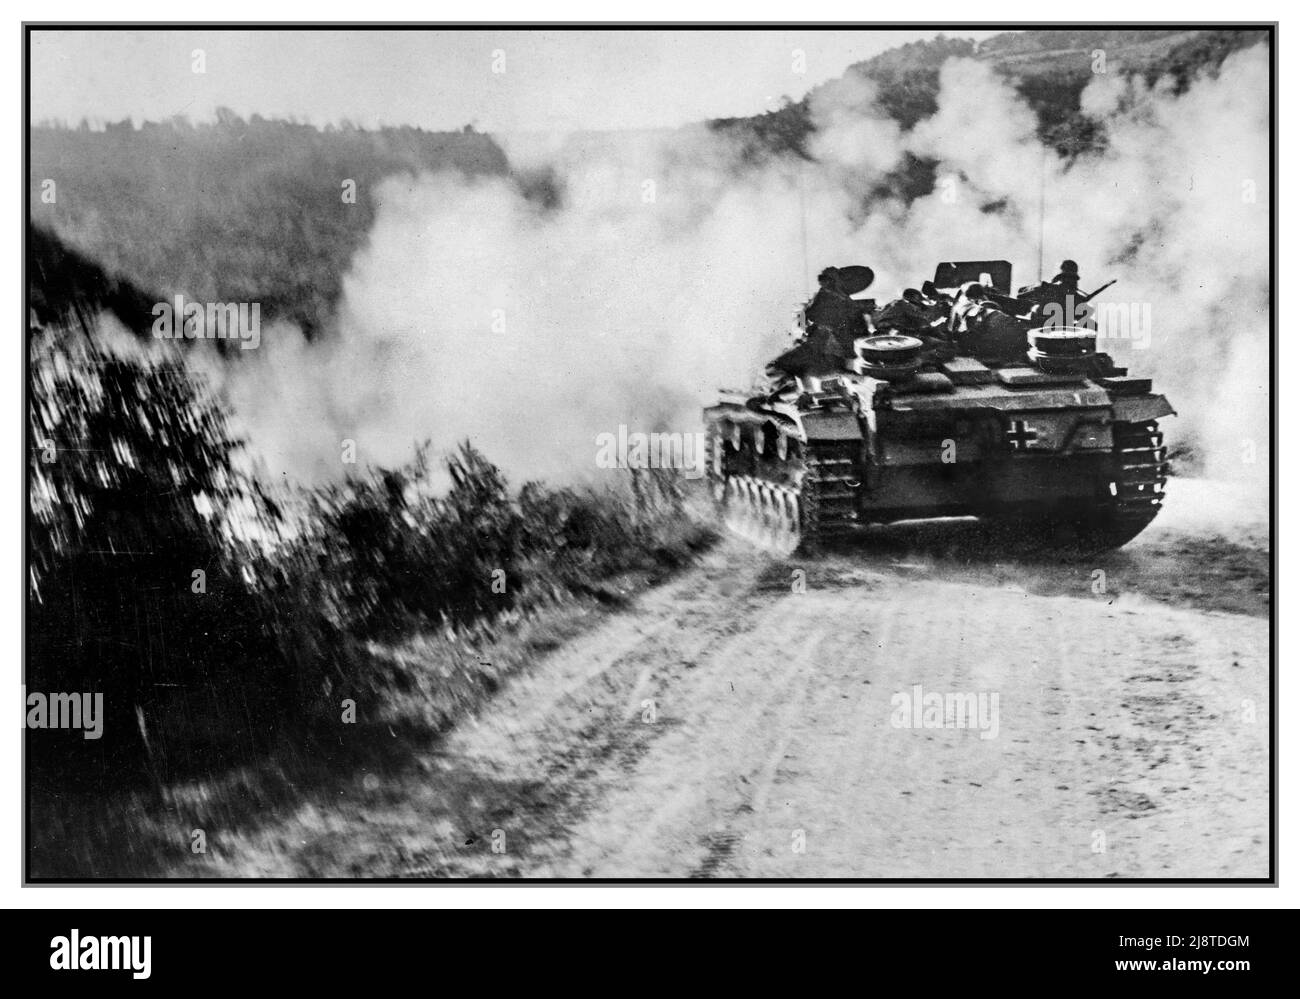 Nazi-Deutsch voll gepanzerte Kampffahrzeug Aktion Beschuss auf Positionen der jugoslawischen Partisanen in Dalmatien durch die deutsche Panzerwaffe StuG III40 Ausf G. WW2 Zweiten Weltkrieg die Sturmschütz III (StuG III) Sturmgewehr war Deutschlands meistgefertigtes voll gepanzertes Kampffahrzeug während des Zweiten Weltkriegs Stockfoto